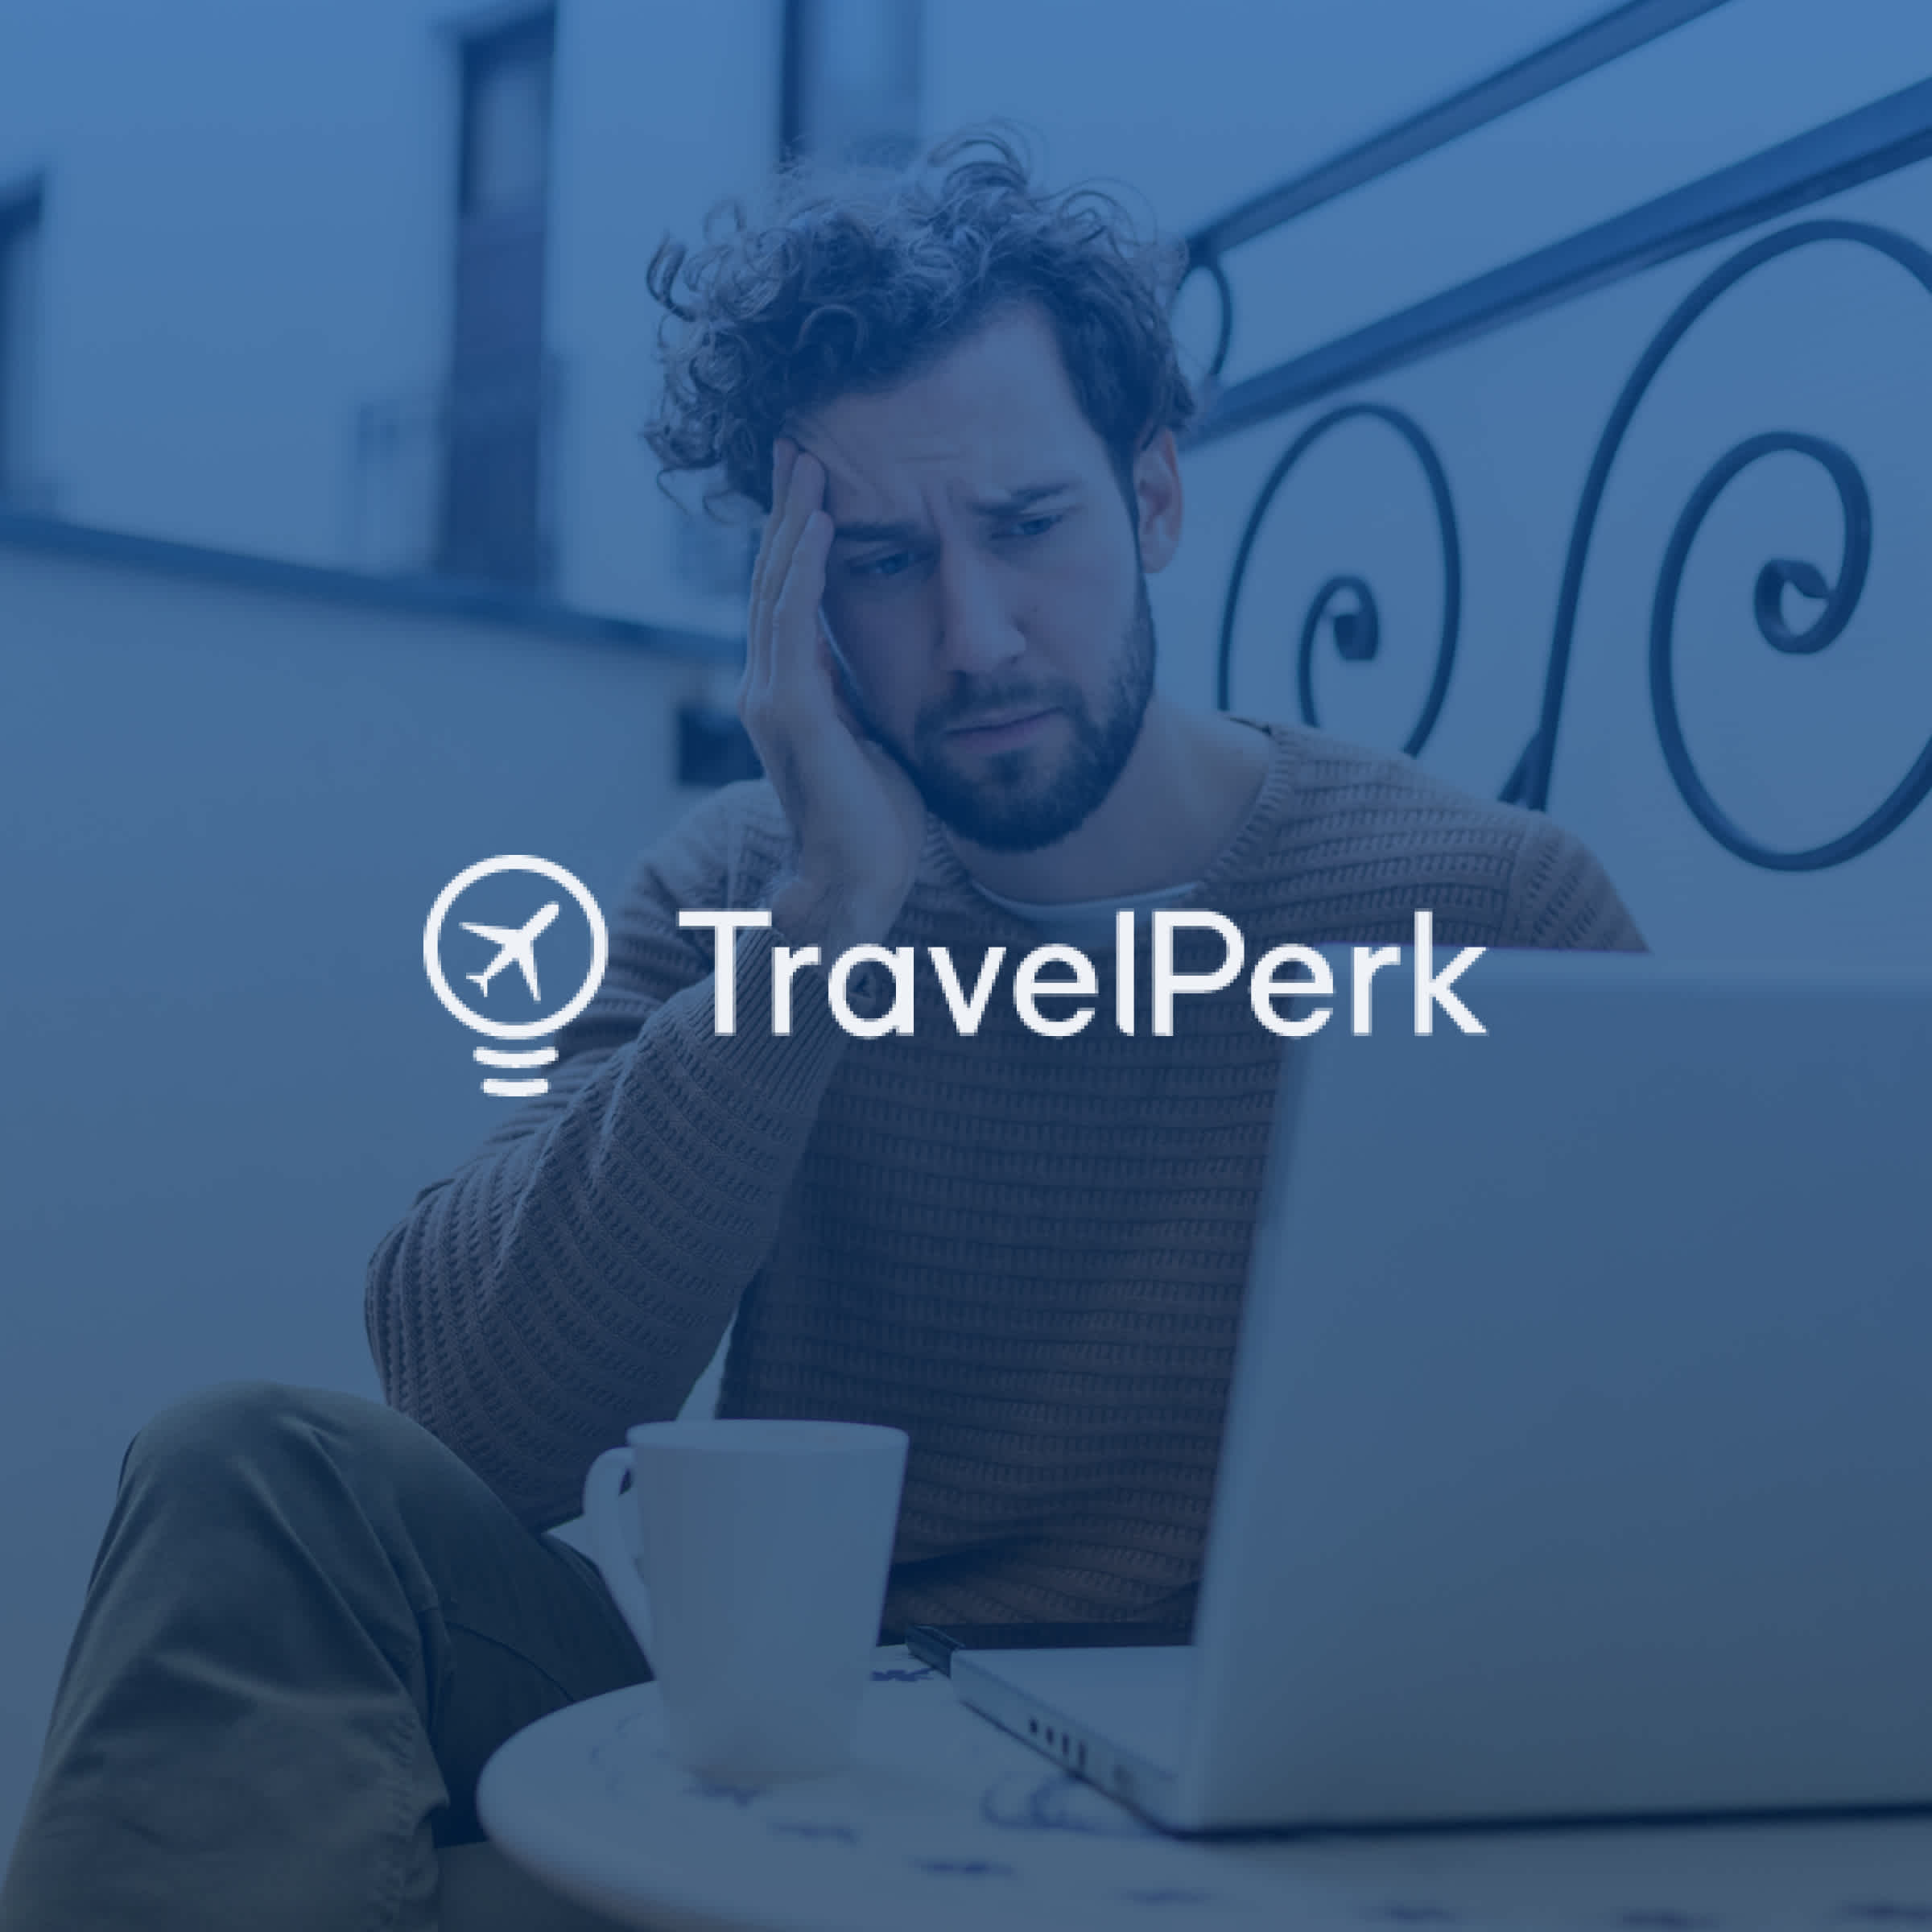 How FullStory helps TravelPerk give first-class customer service